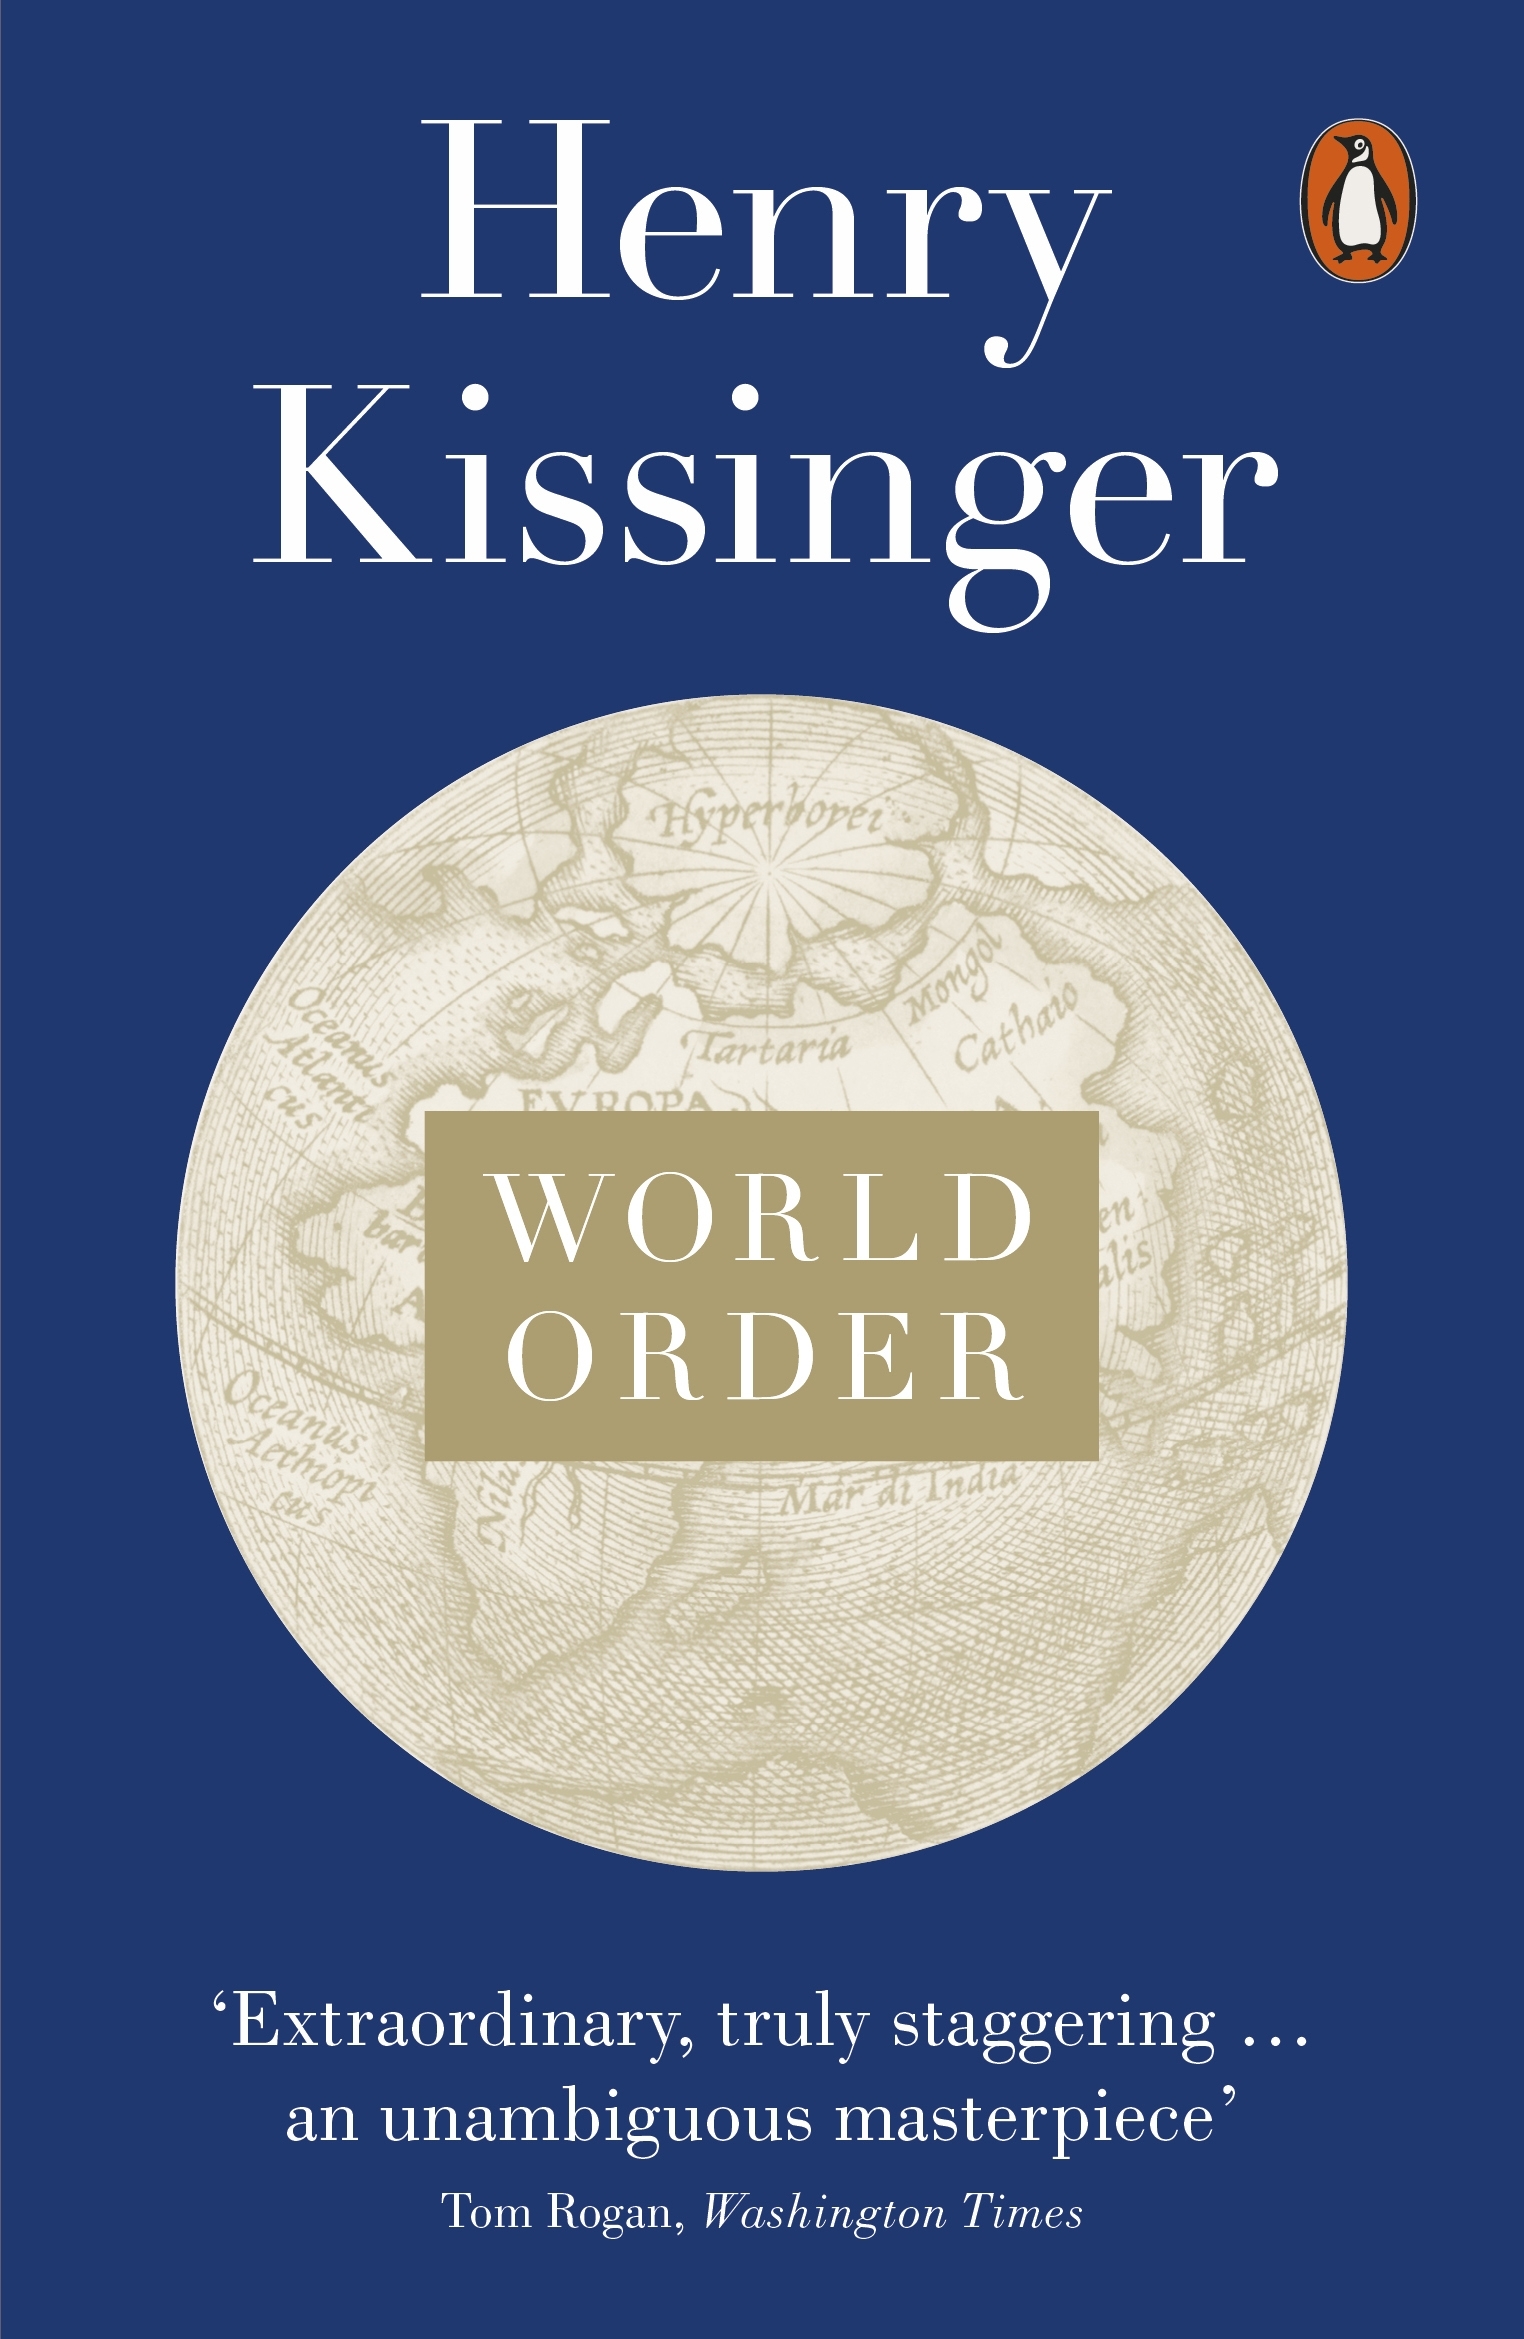 henry kissinger new book